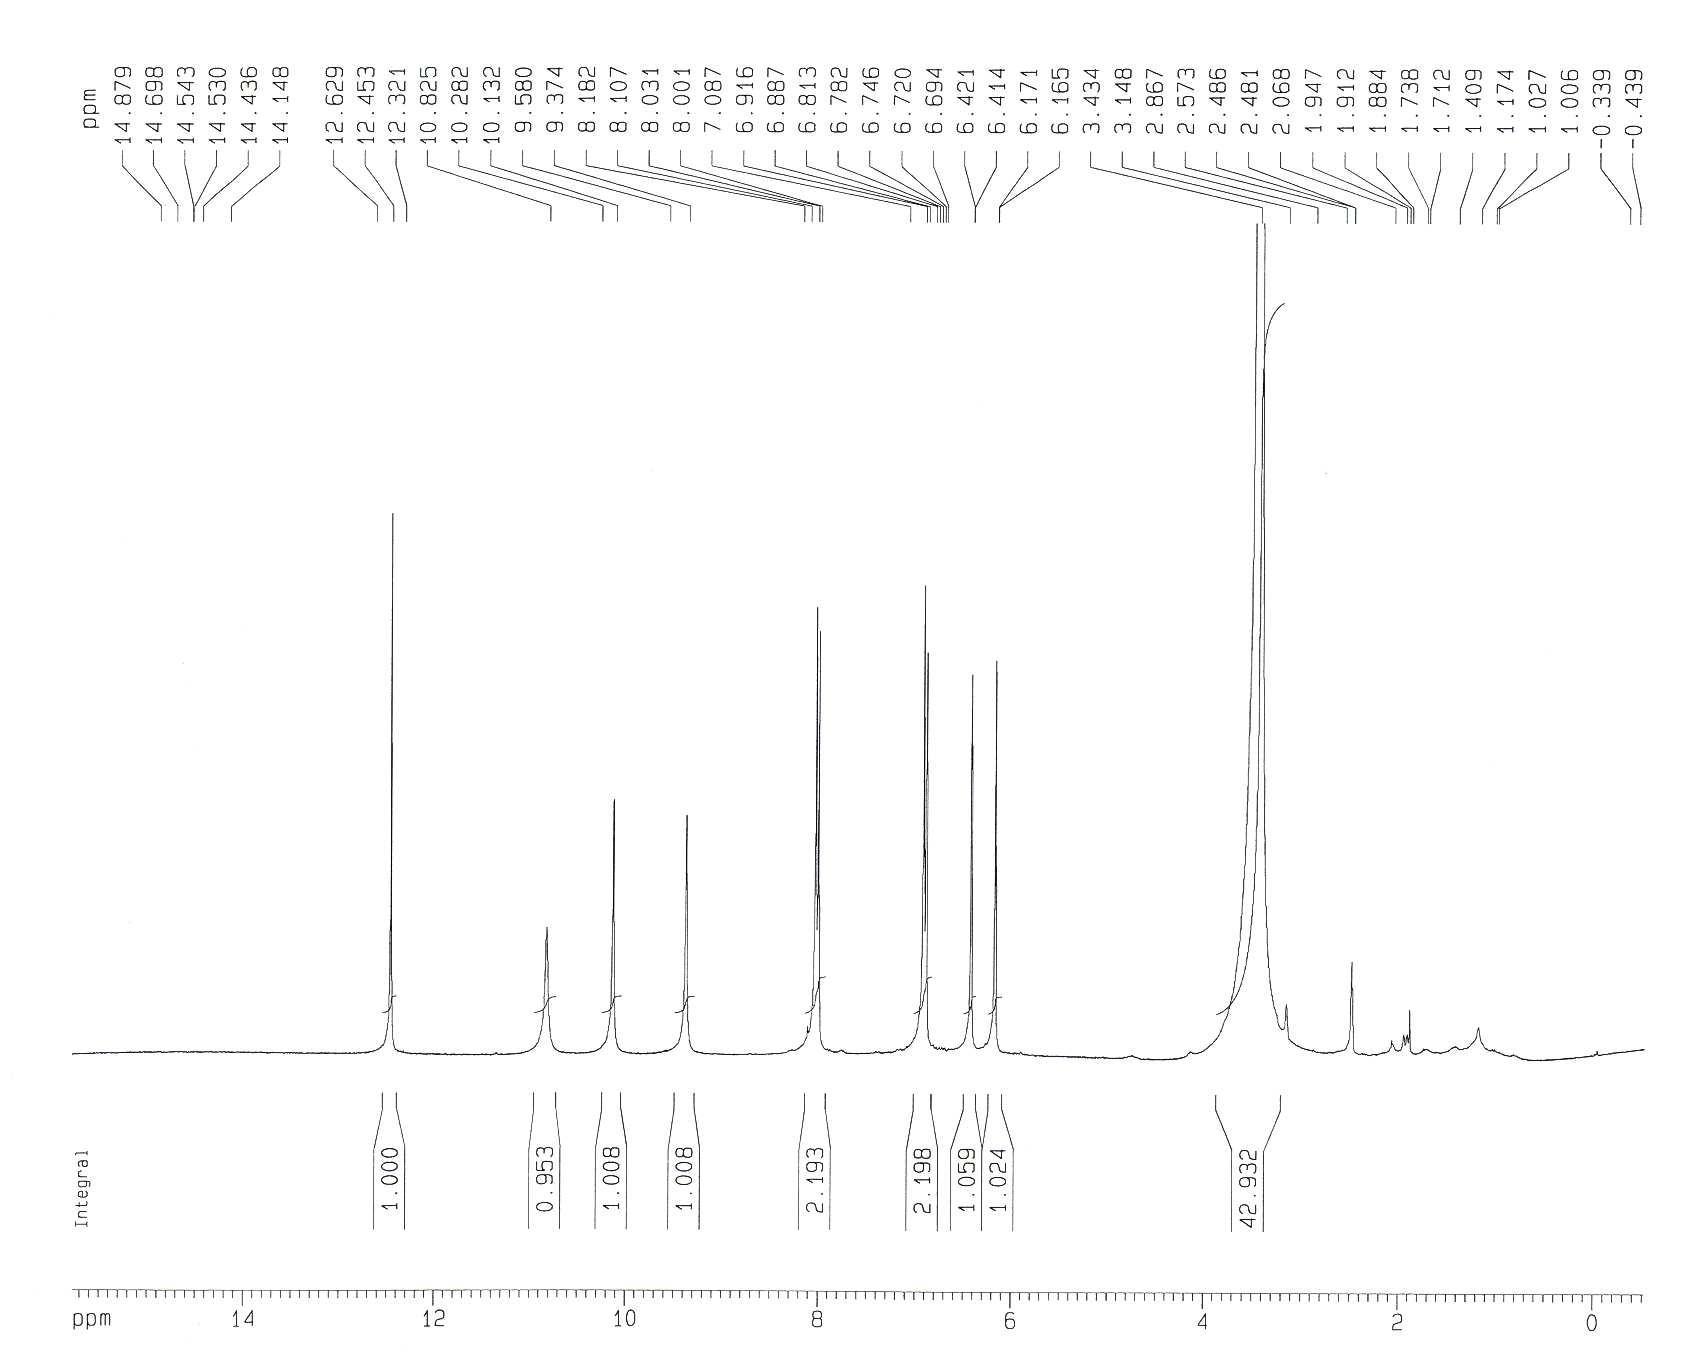 1H-NMR Spectrum of Compound 1